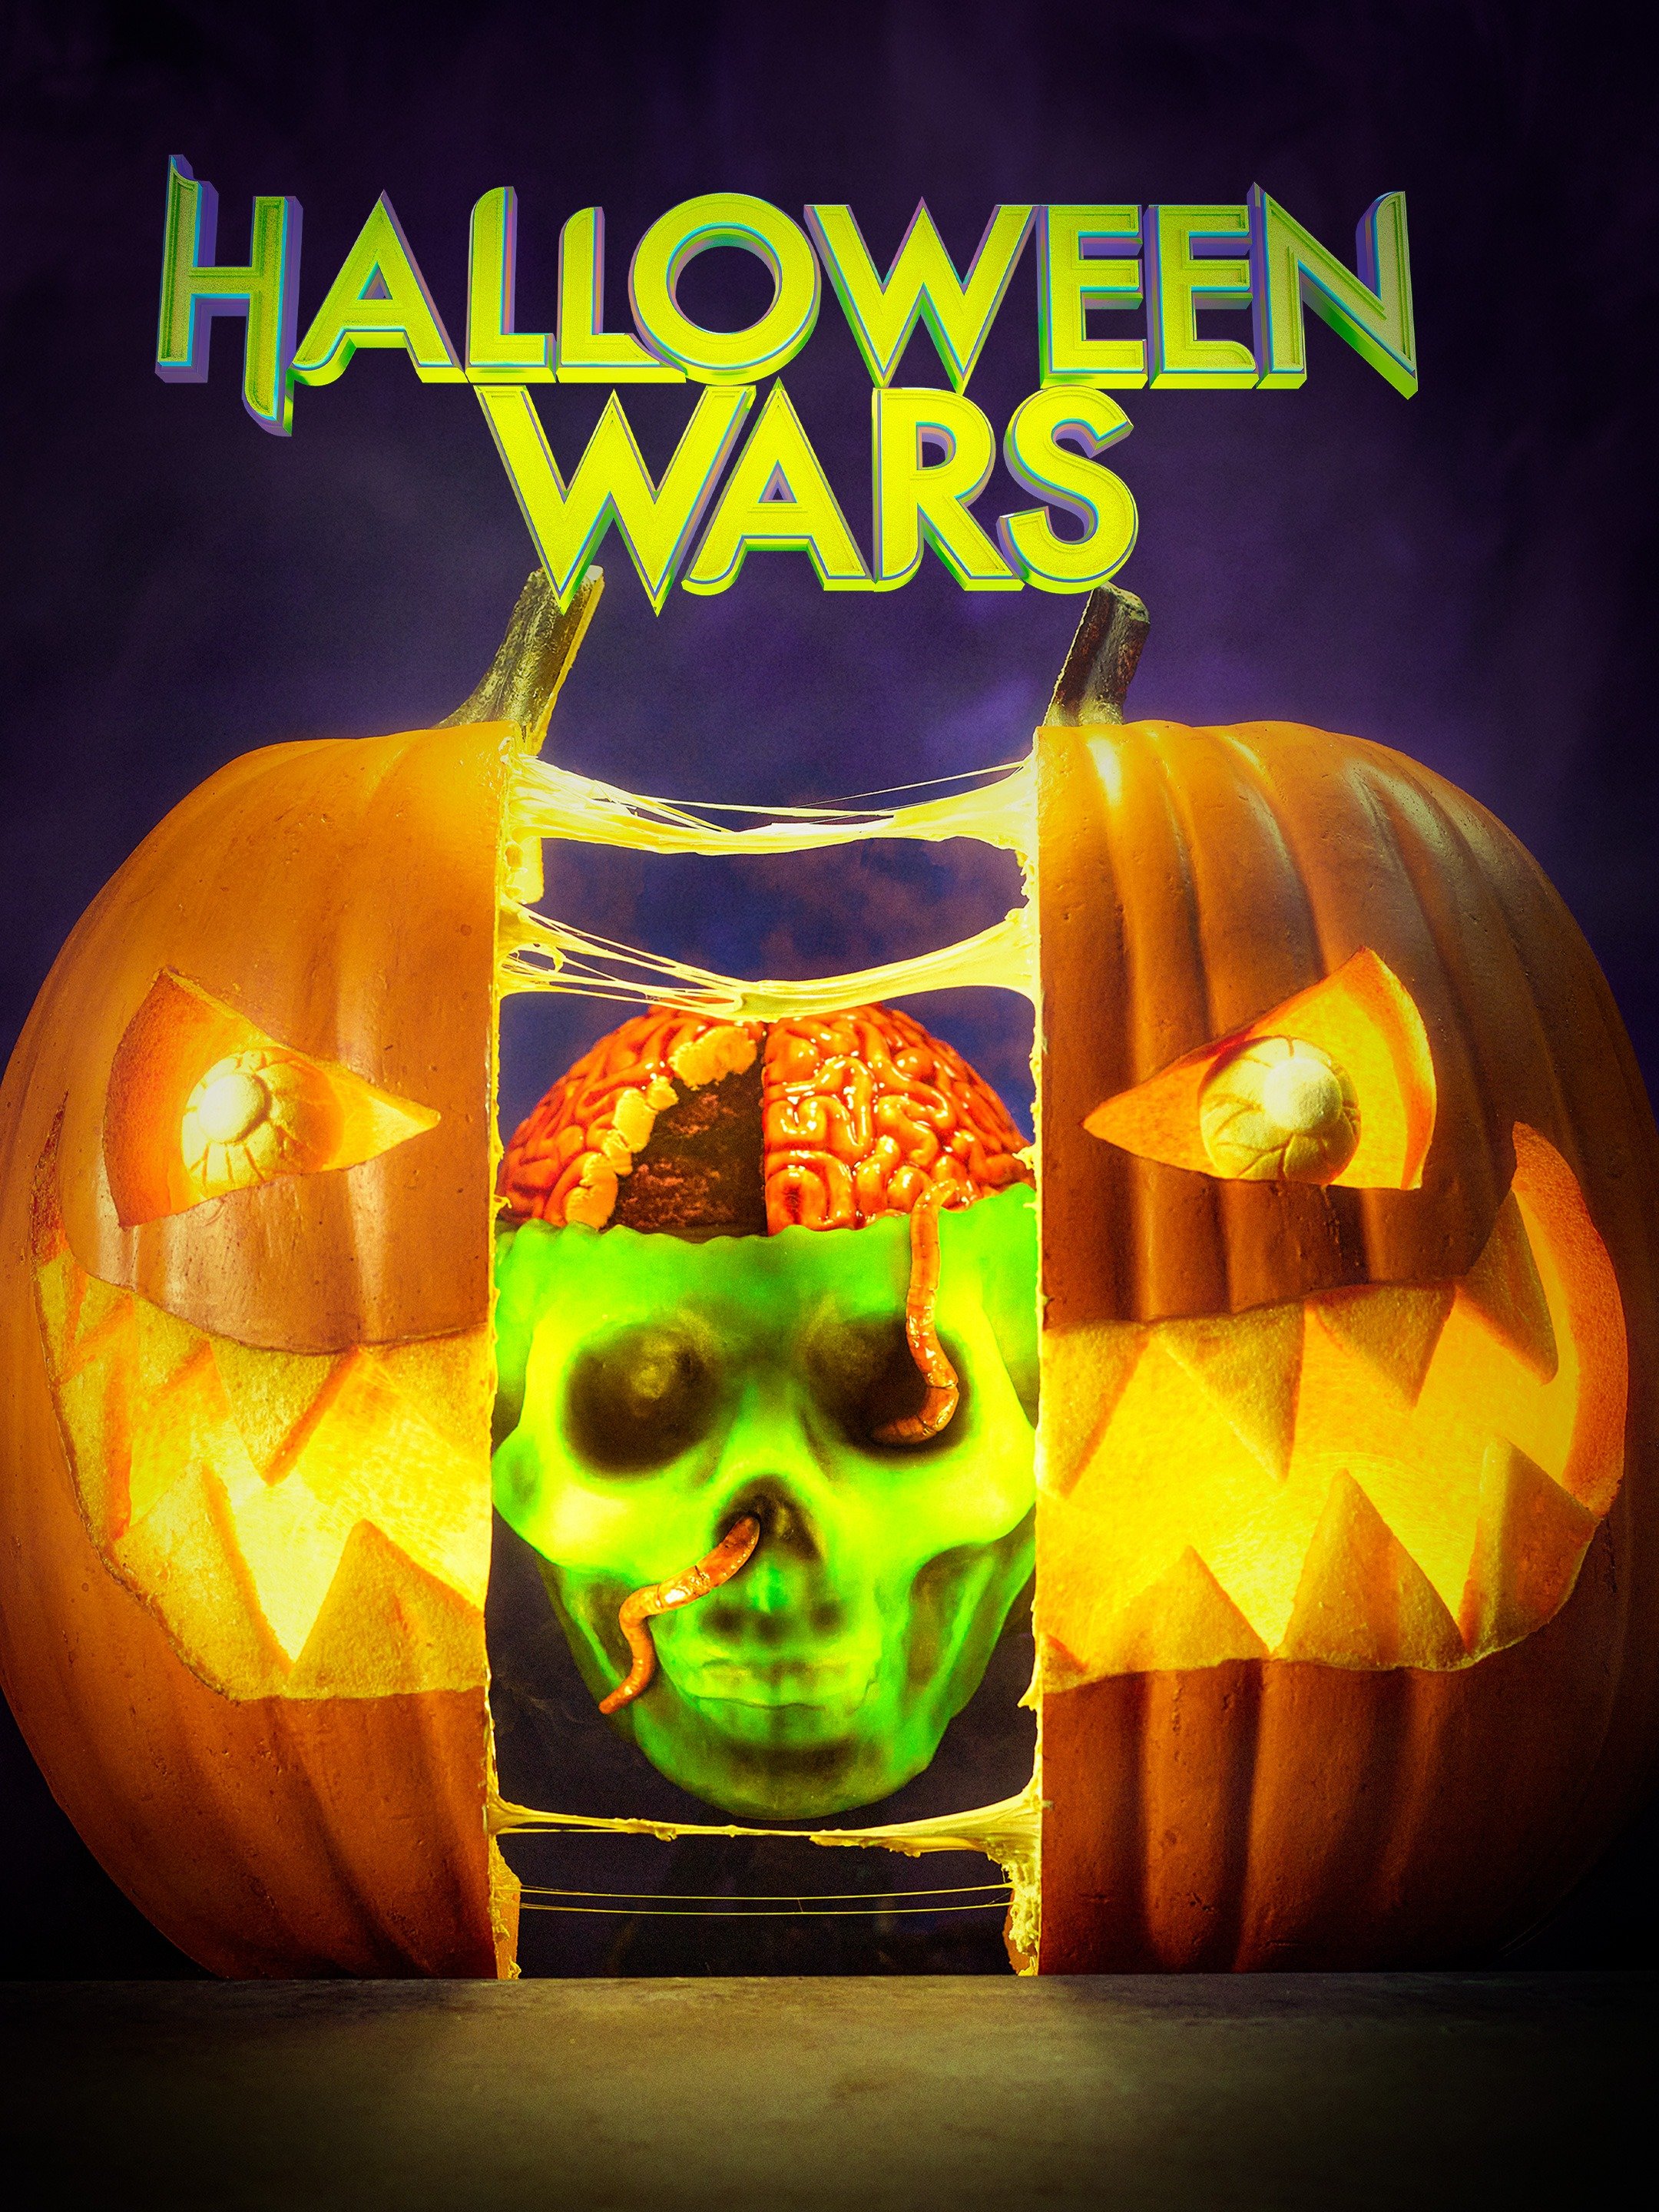 Halloween Wars Rotten Tomatoes